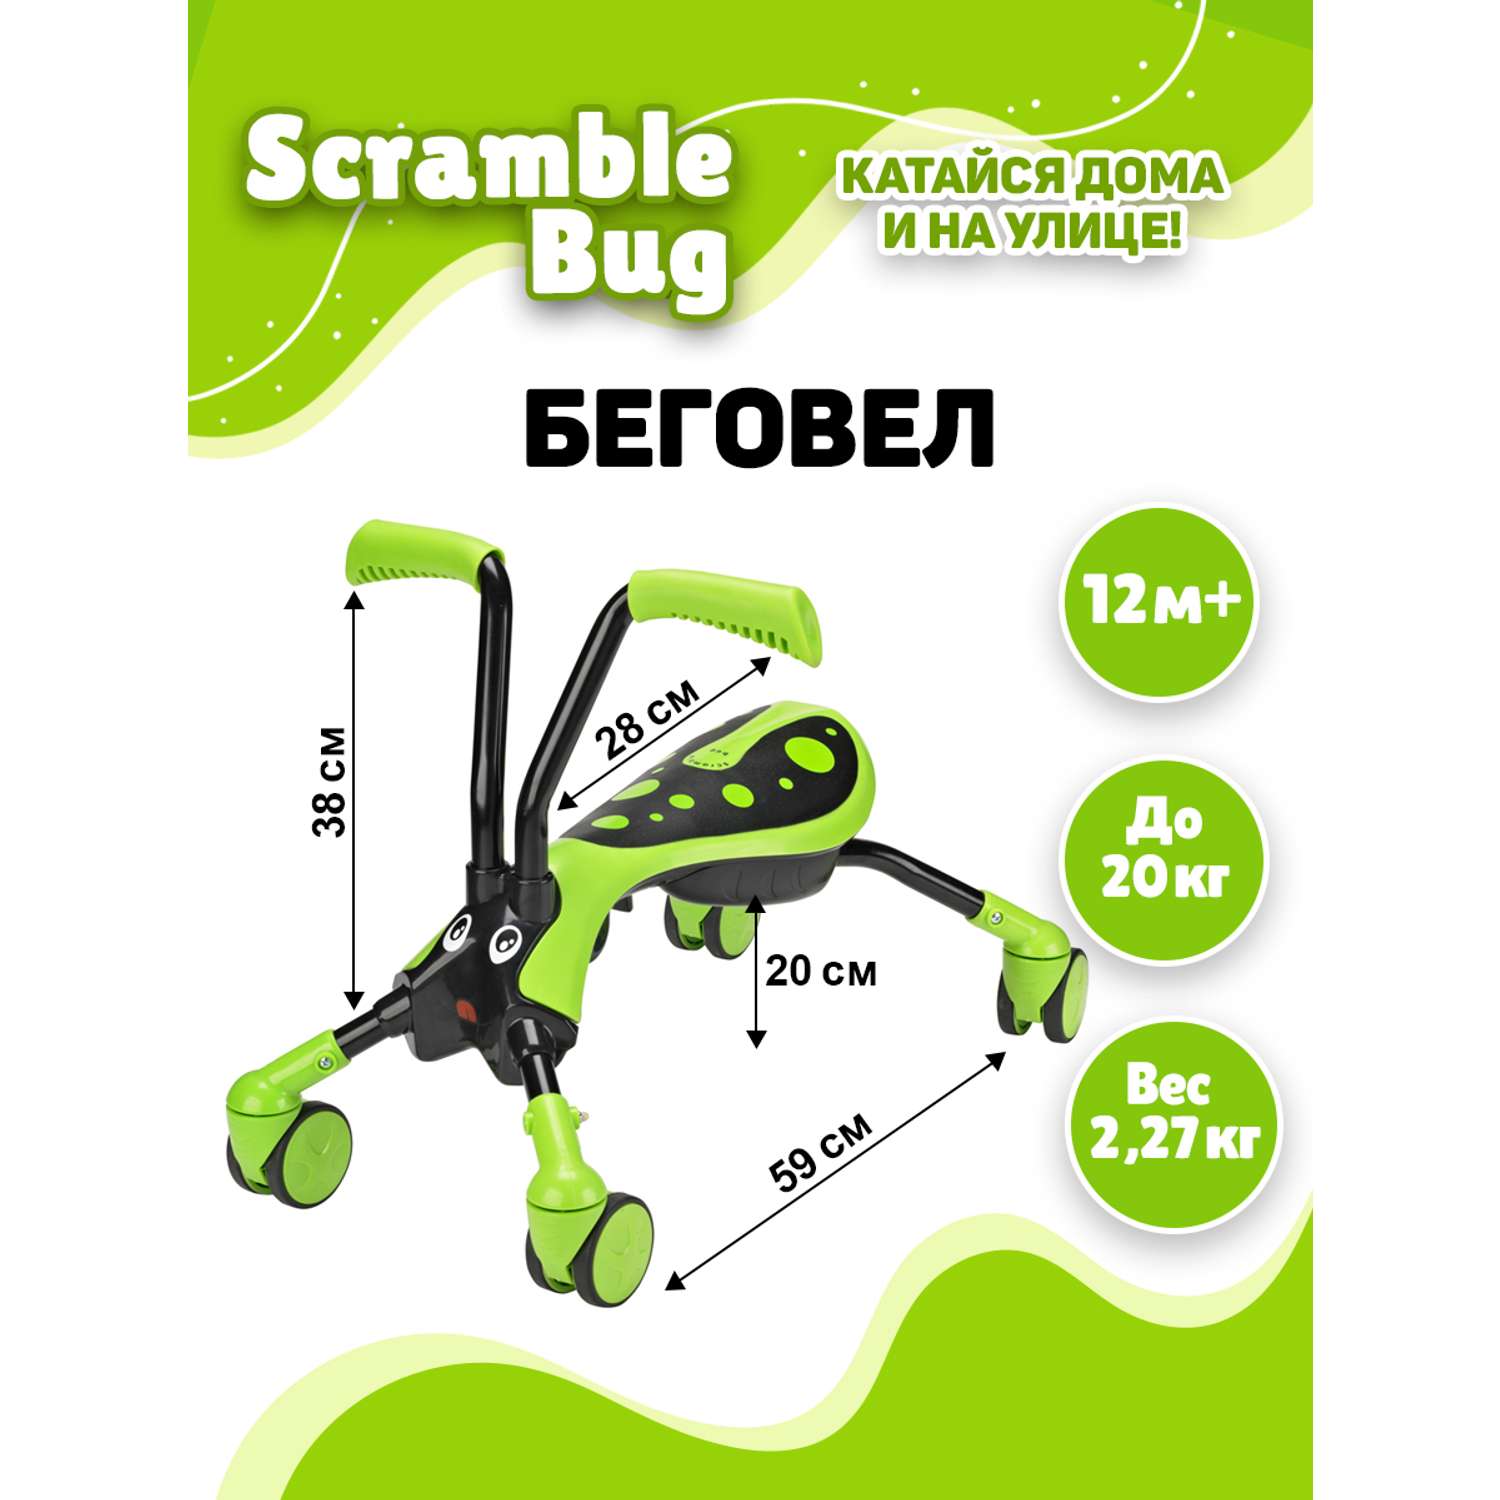 Беговел Scramble Bug трансформер четырехколесный велосипед Кузнечик - фото 6